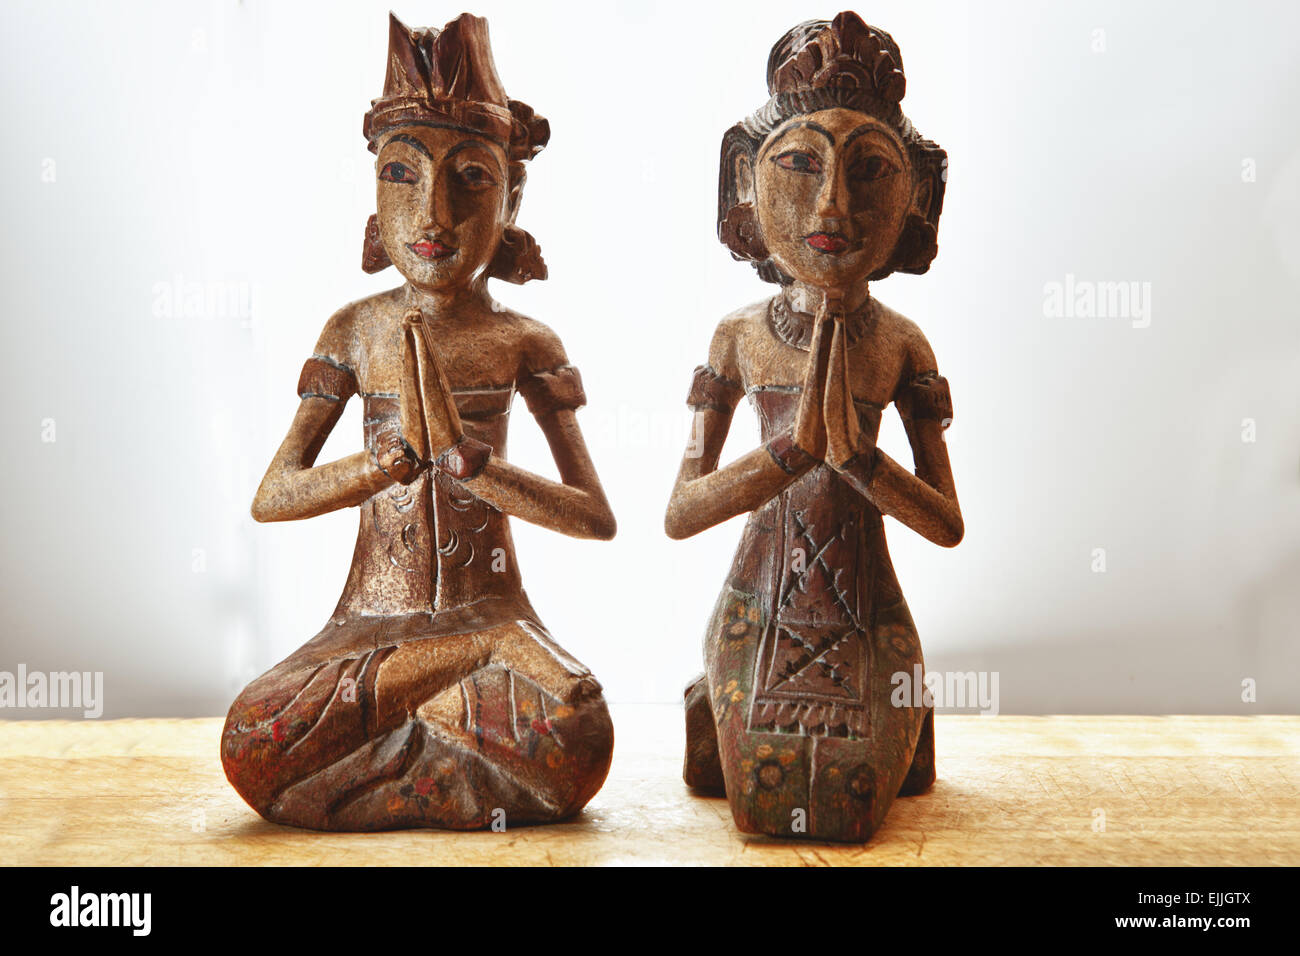 Thailandia souvenir in legno giovane nella tradizionale preghiera e ringraziamento pongono. Isolato su sfondo bianco, posto sul trattamento di legno Foto Stock